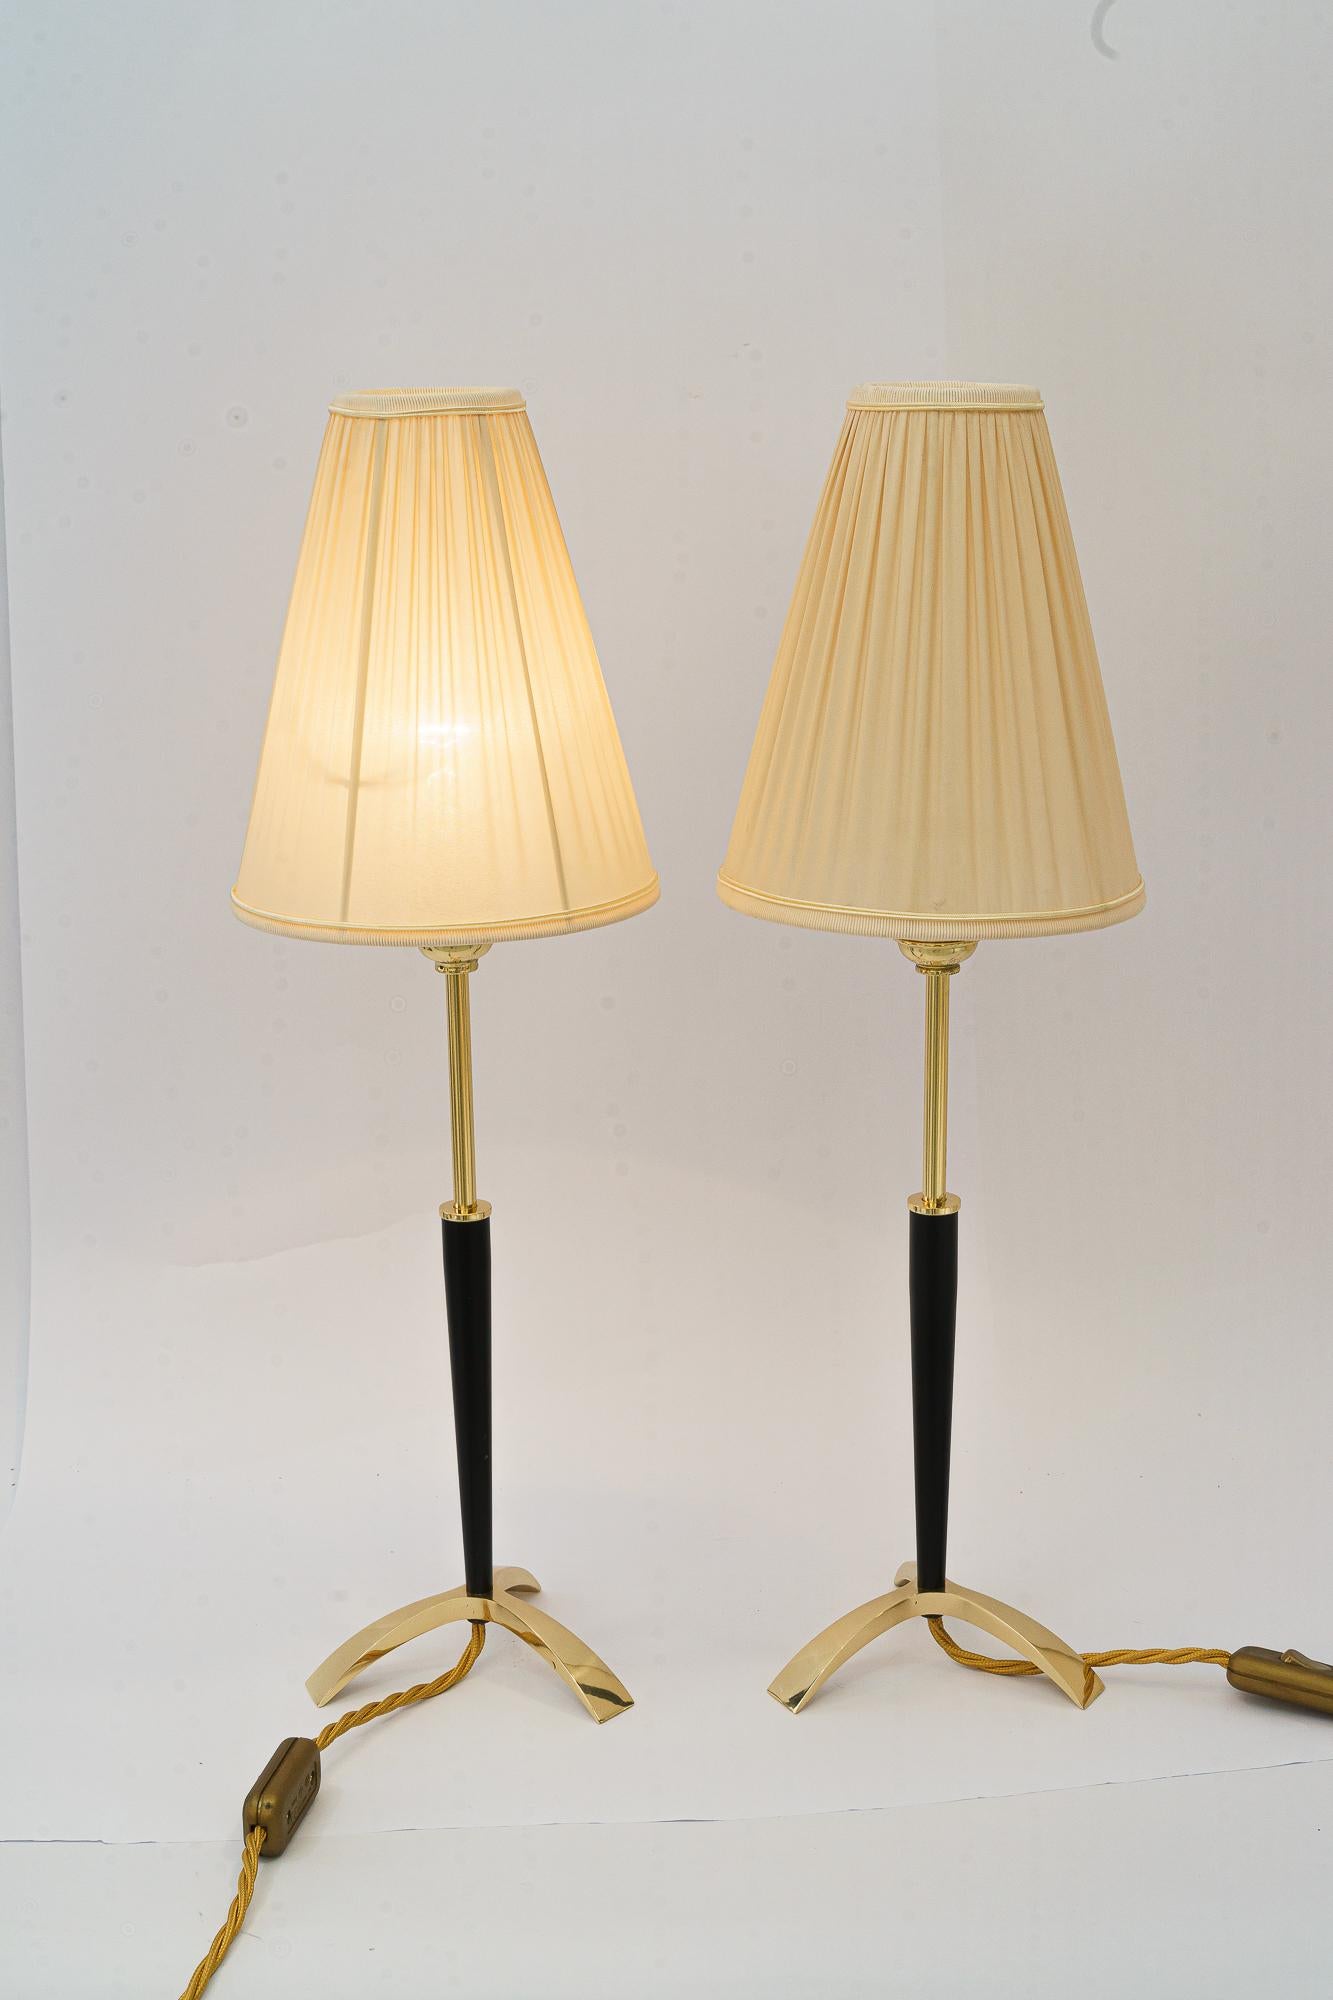 Ausziehbare Tischlampen von J.T. Kalmar, ca. 1950er Jahre
Einstellbar von 43cm bis zu 54cm 
Messing poliert und emailliert
Der Stoffschirm wird ersetzt ( neu )